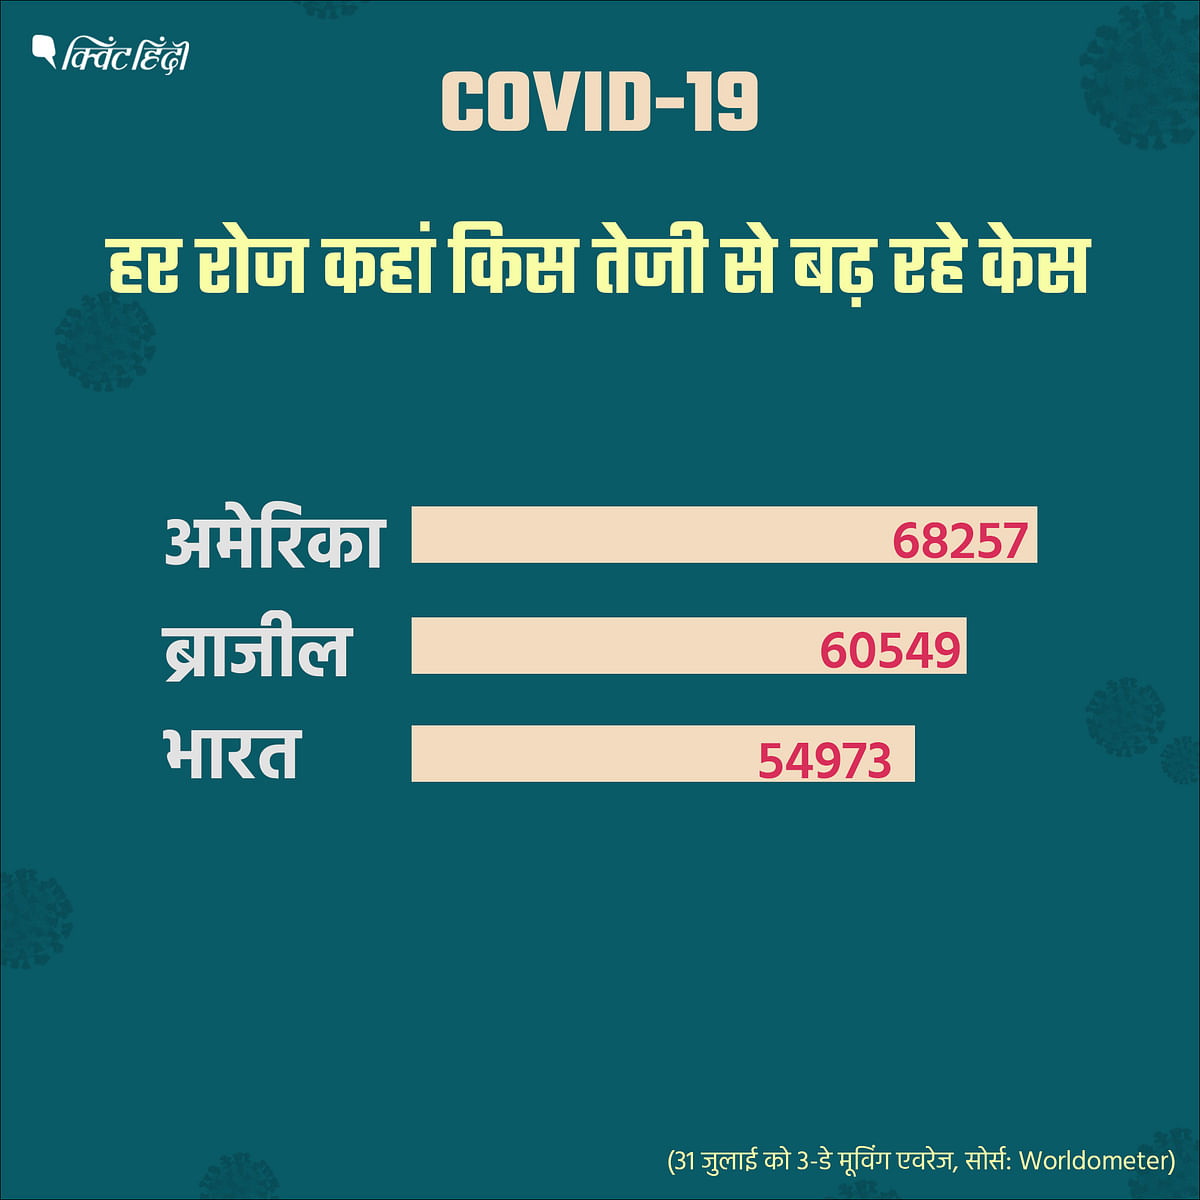 क्या भारत की ज्यादा आबादी की वजह से यहां ज्यादा COVID-19 केस सामने आ रहे हैं?